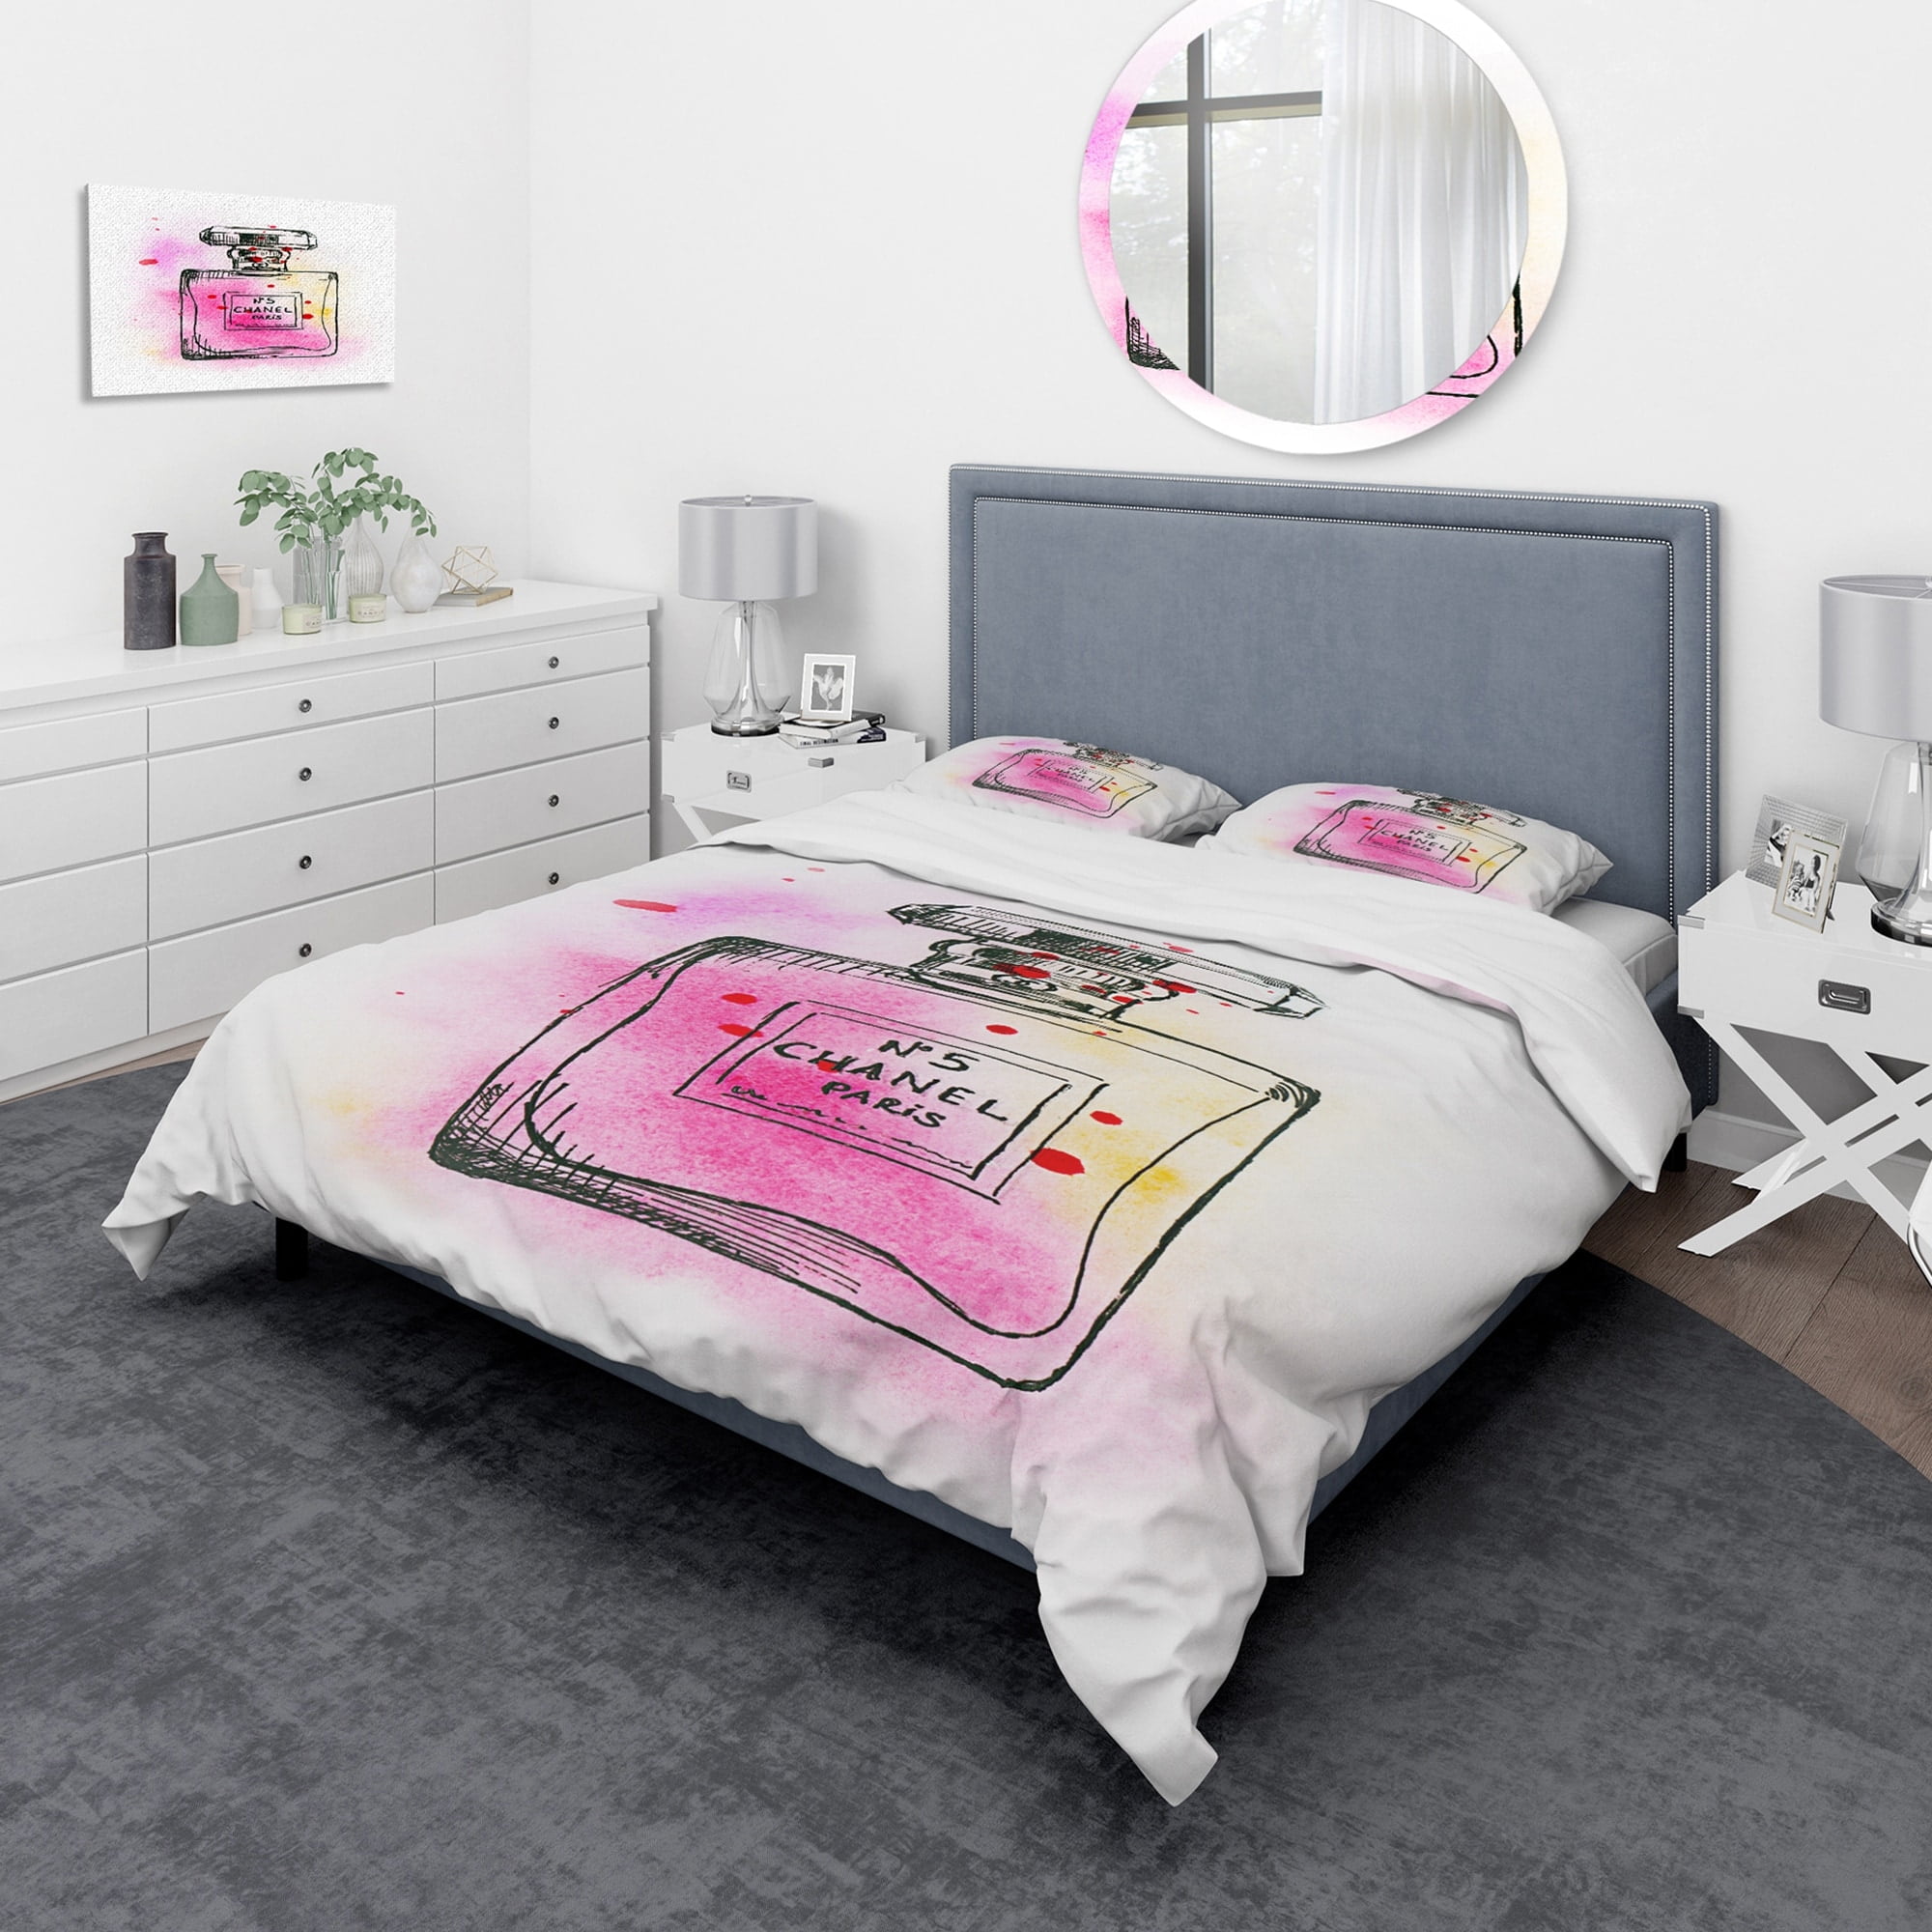 Chanel bed room set